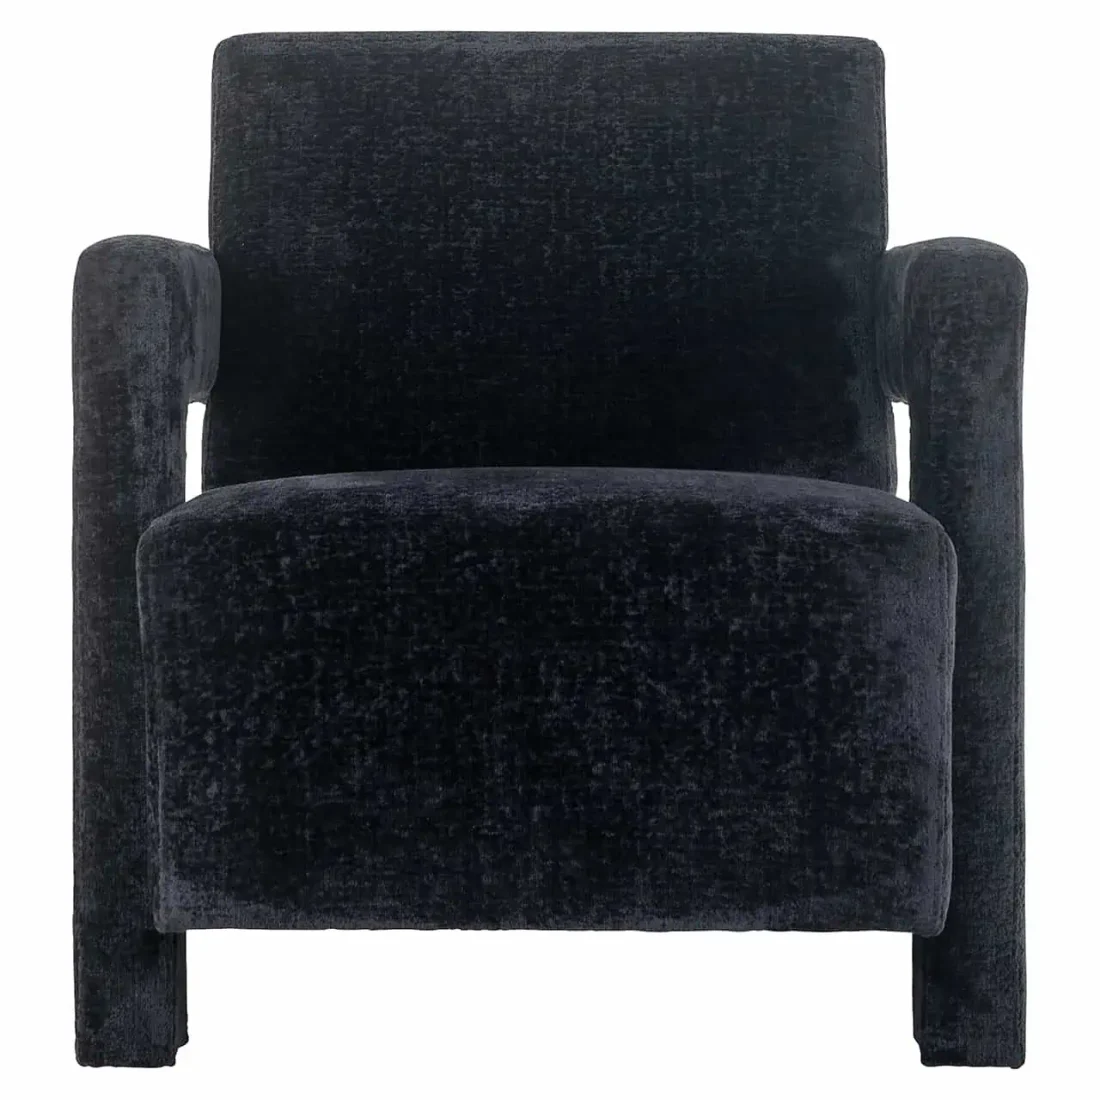 Richmond Interiors fauteuil Devanto zwart